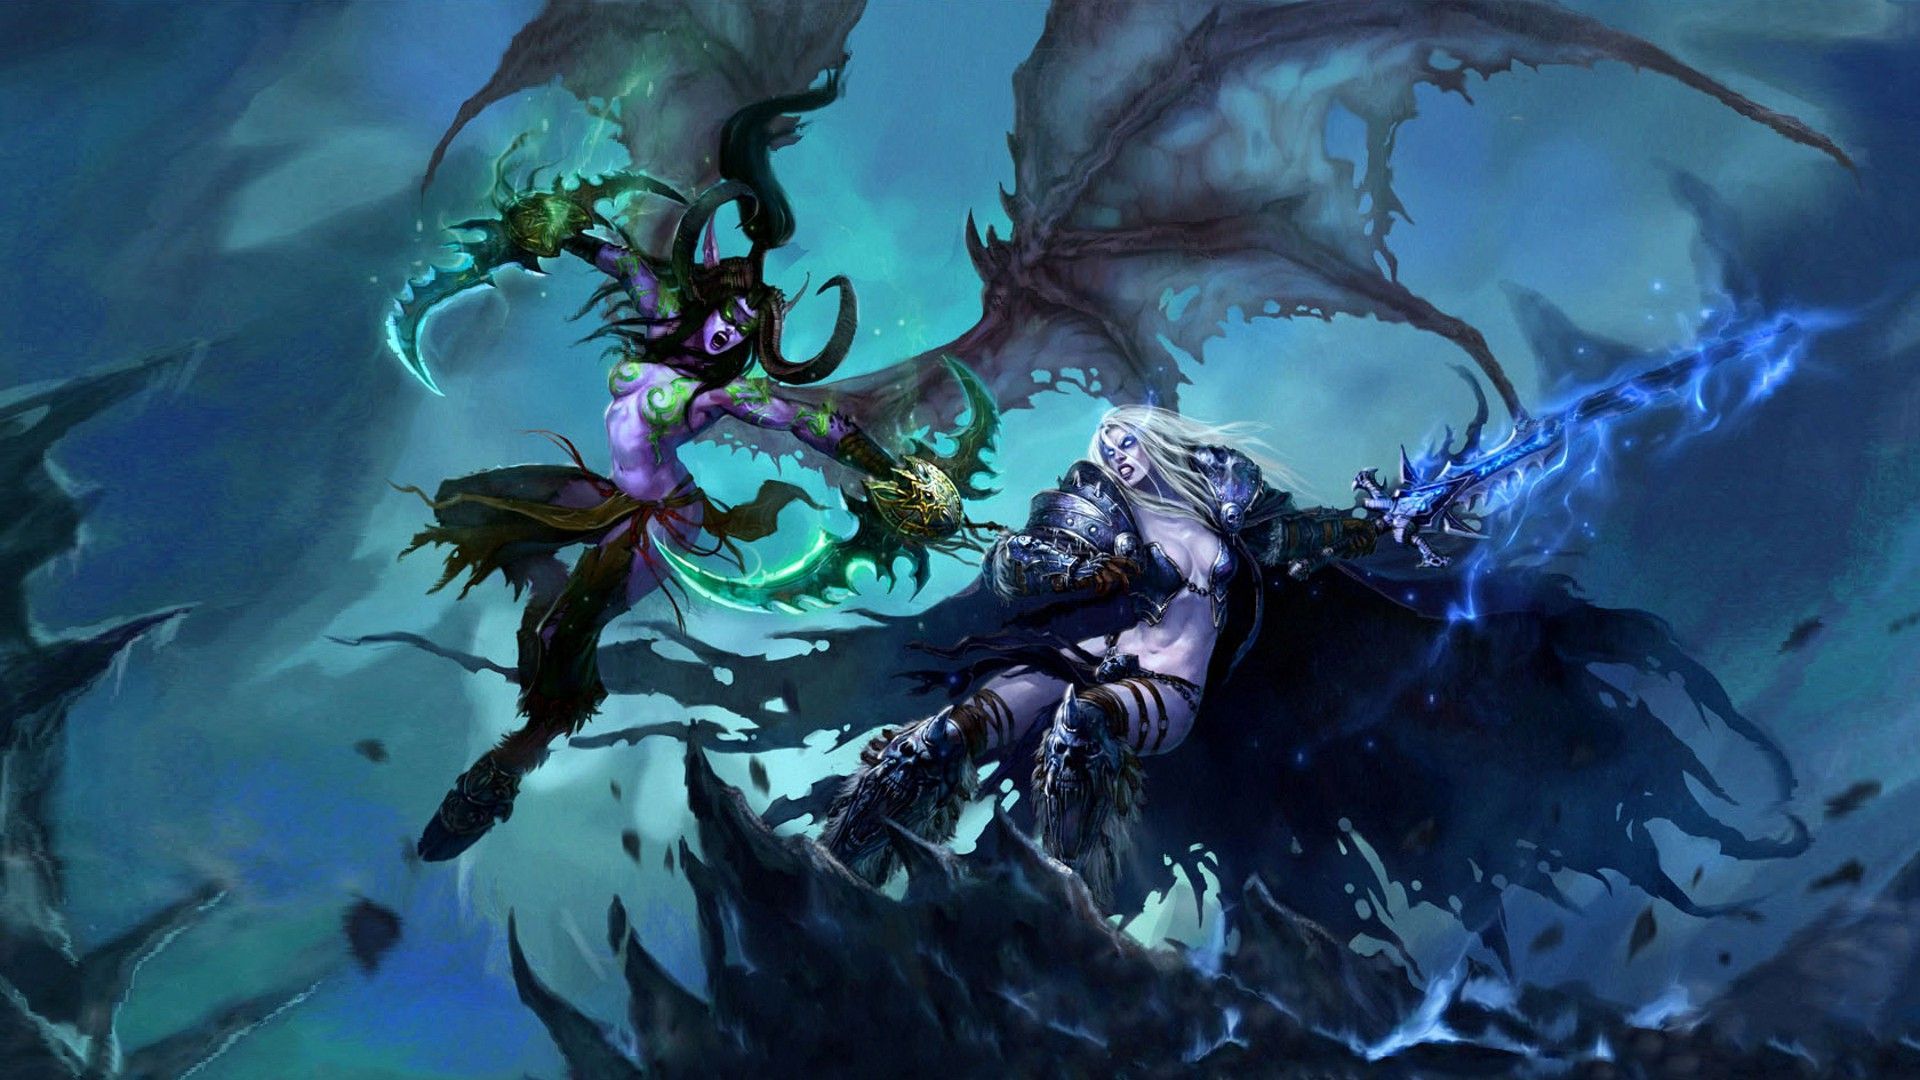 Illidan vs Sylvanas   World of Warcraft wallpaper   1070020